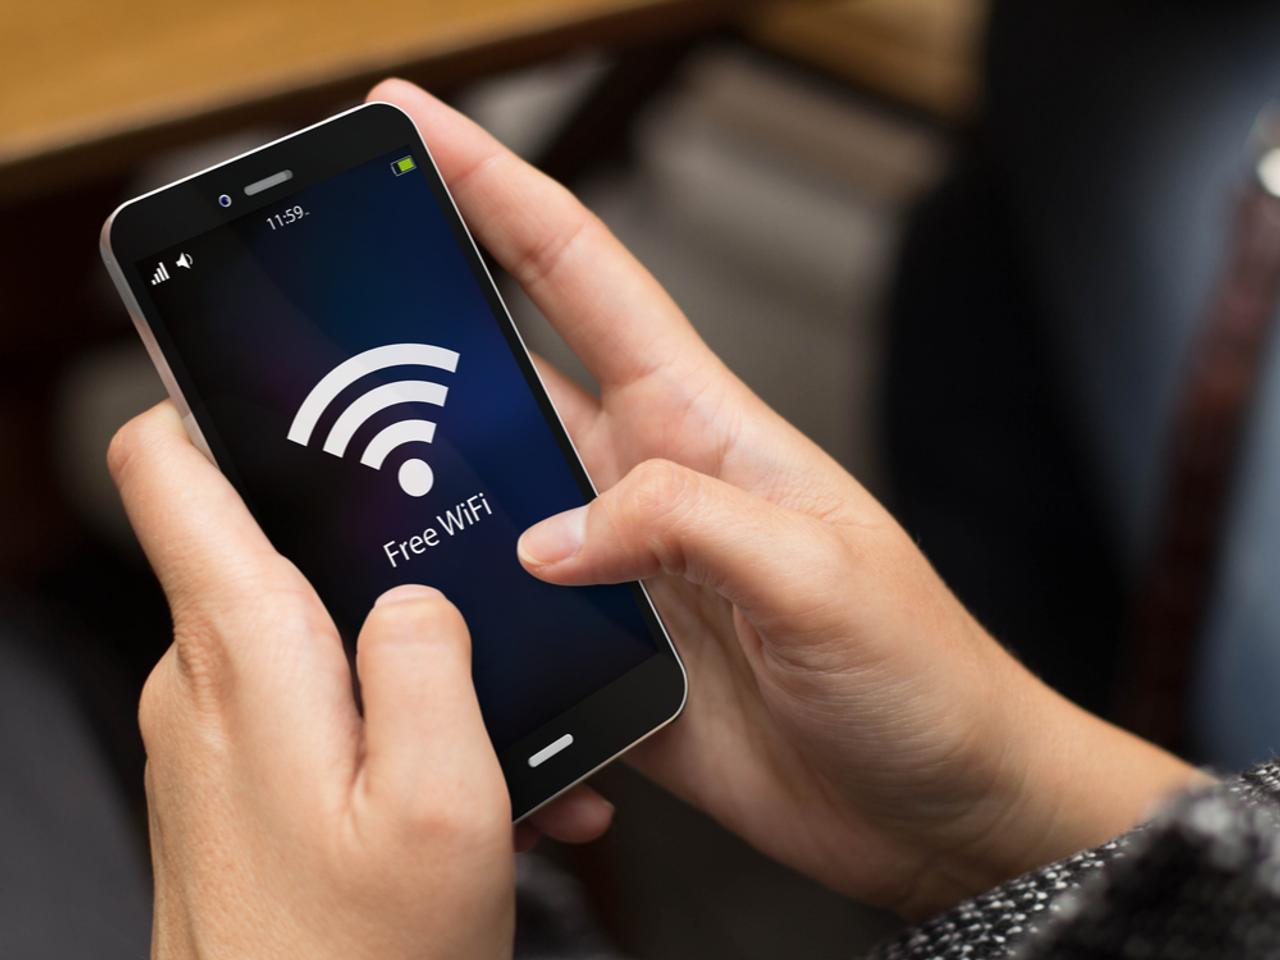 Android 8.1 Oreoで公共Wi-Fiの速度が表示されるように！ かなり便利な機能かも